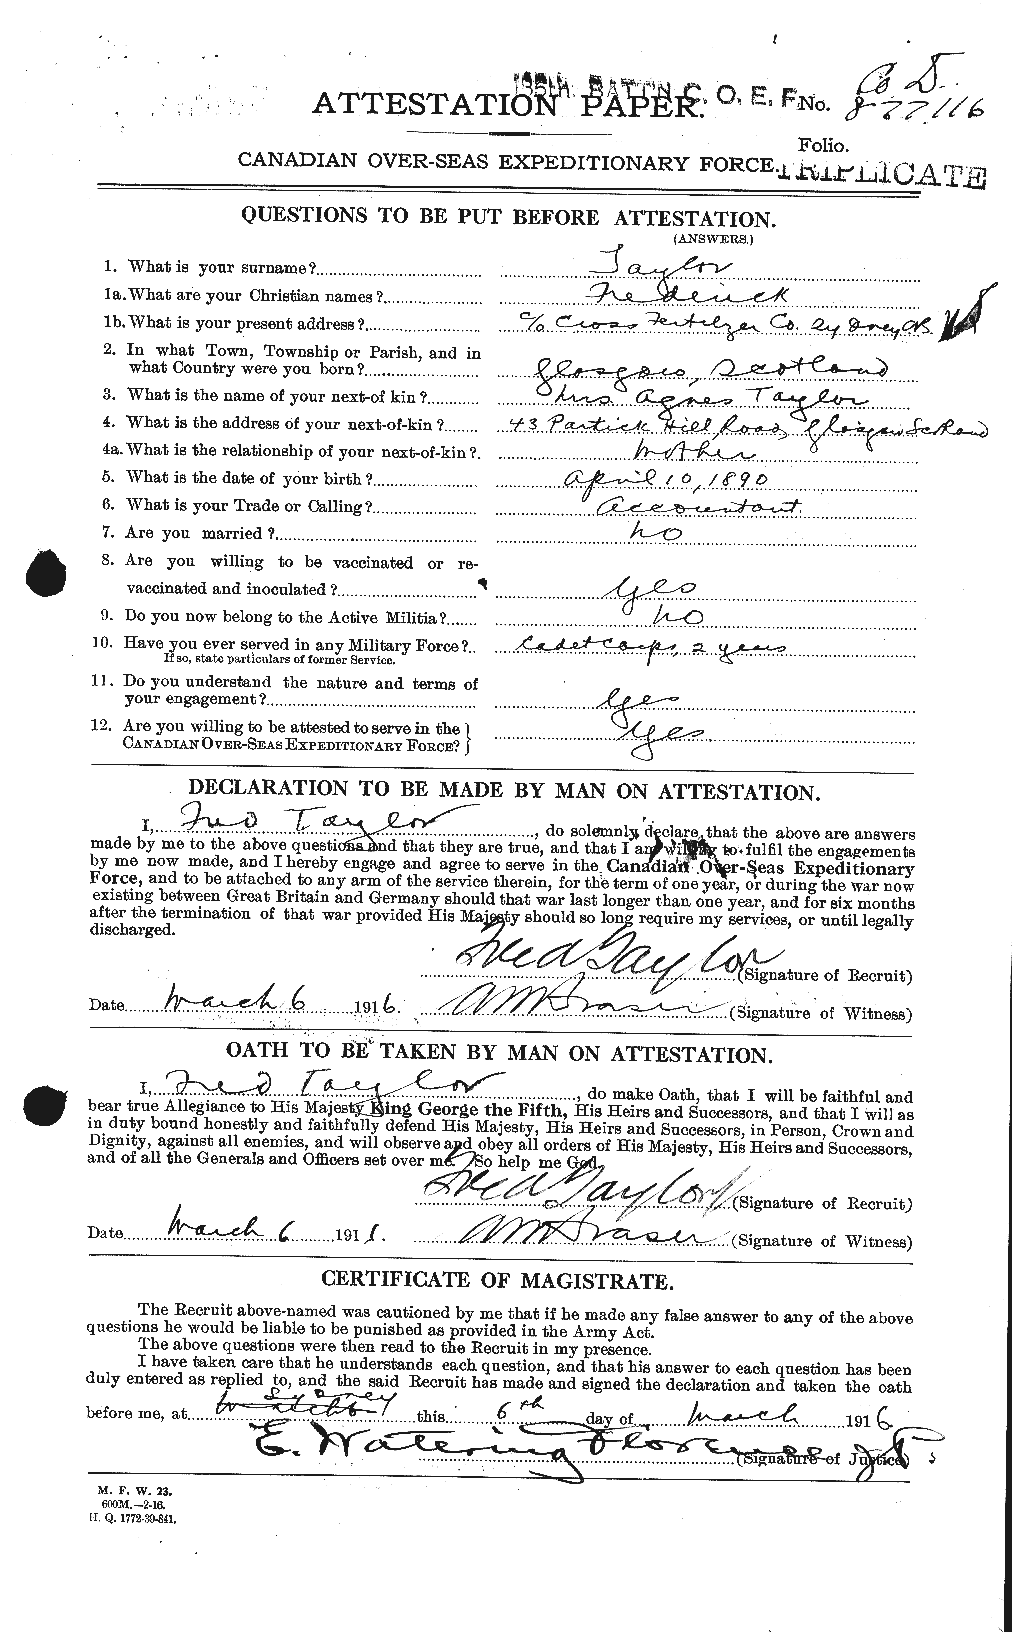 Dossiers du Personnel de la Première Guerre mondiale - CEC 625762a